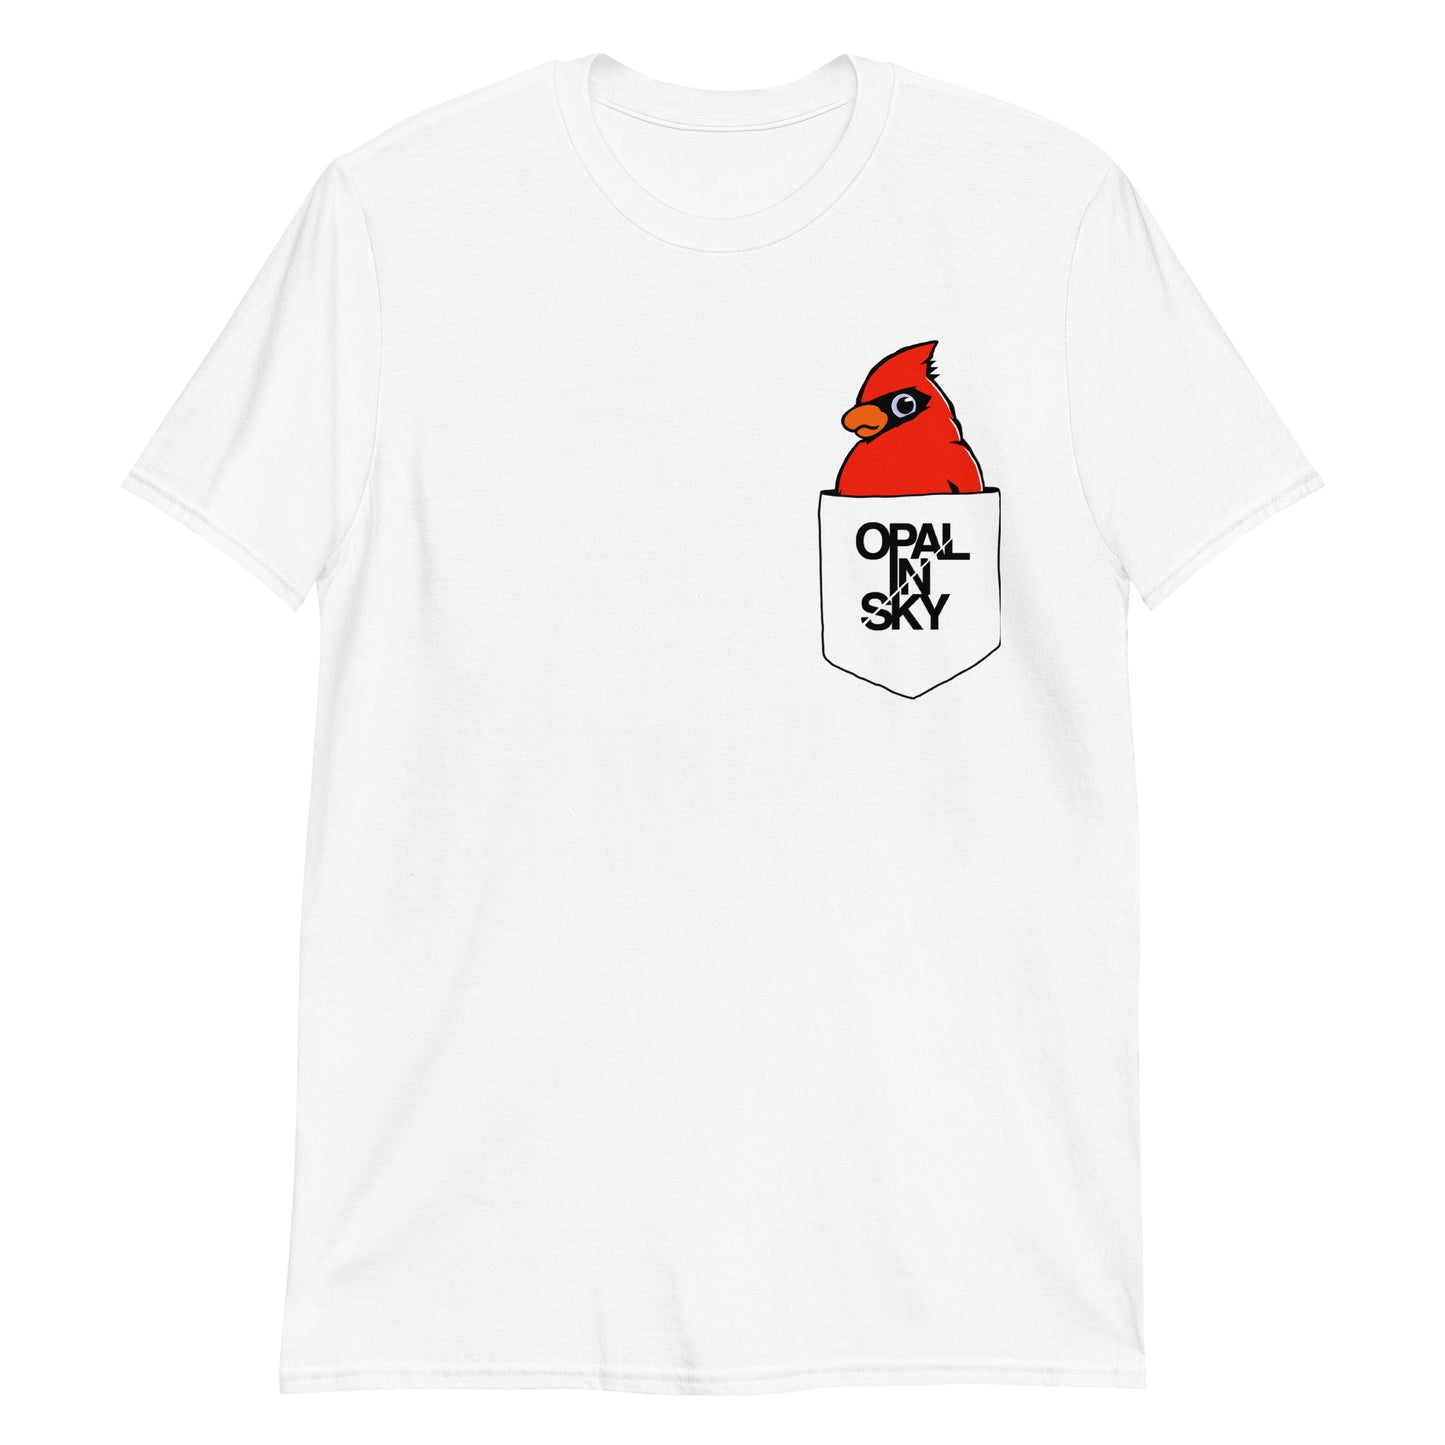 OPAL IN SKY "IT'S A BIRD!" White Unisex T-Shirt